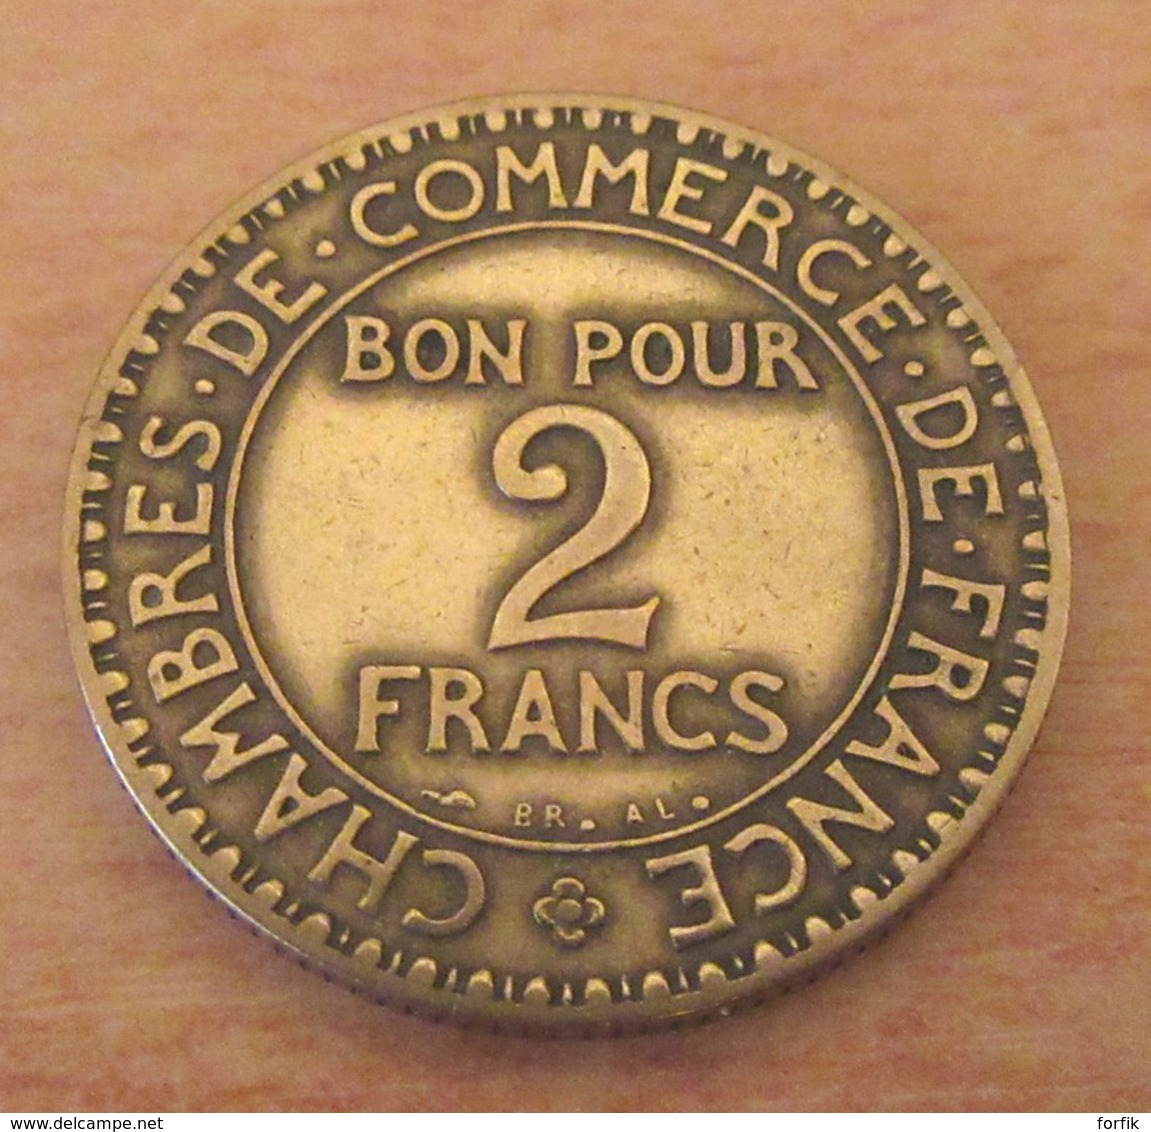 France - 5 Monnaies (millésimes peu communs) dont 2 cts Napoléon 3 1855 D (Lyon) à l'ancre, grand D et petit Lion -